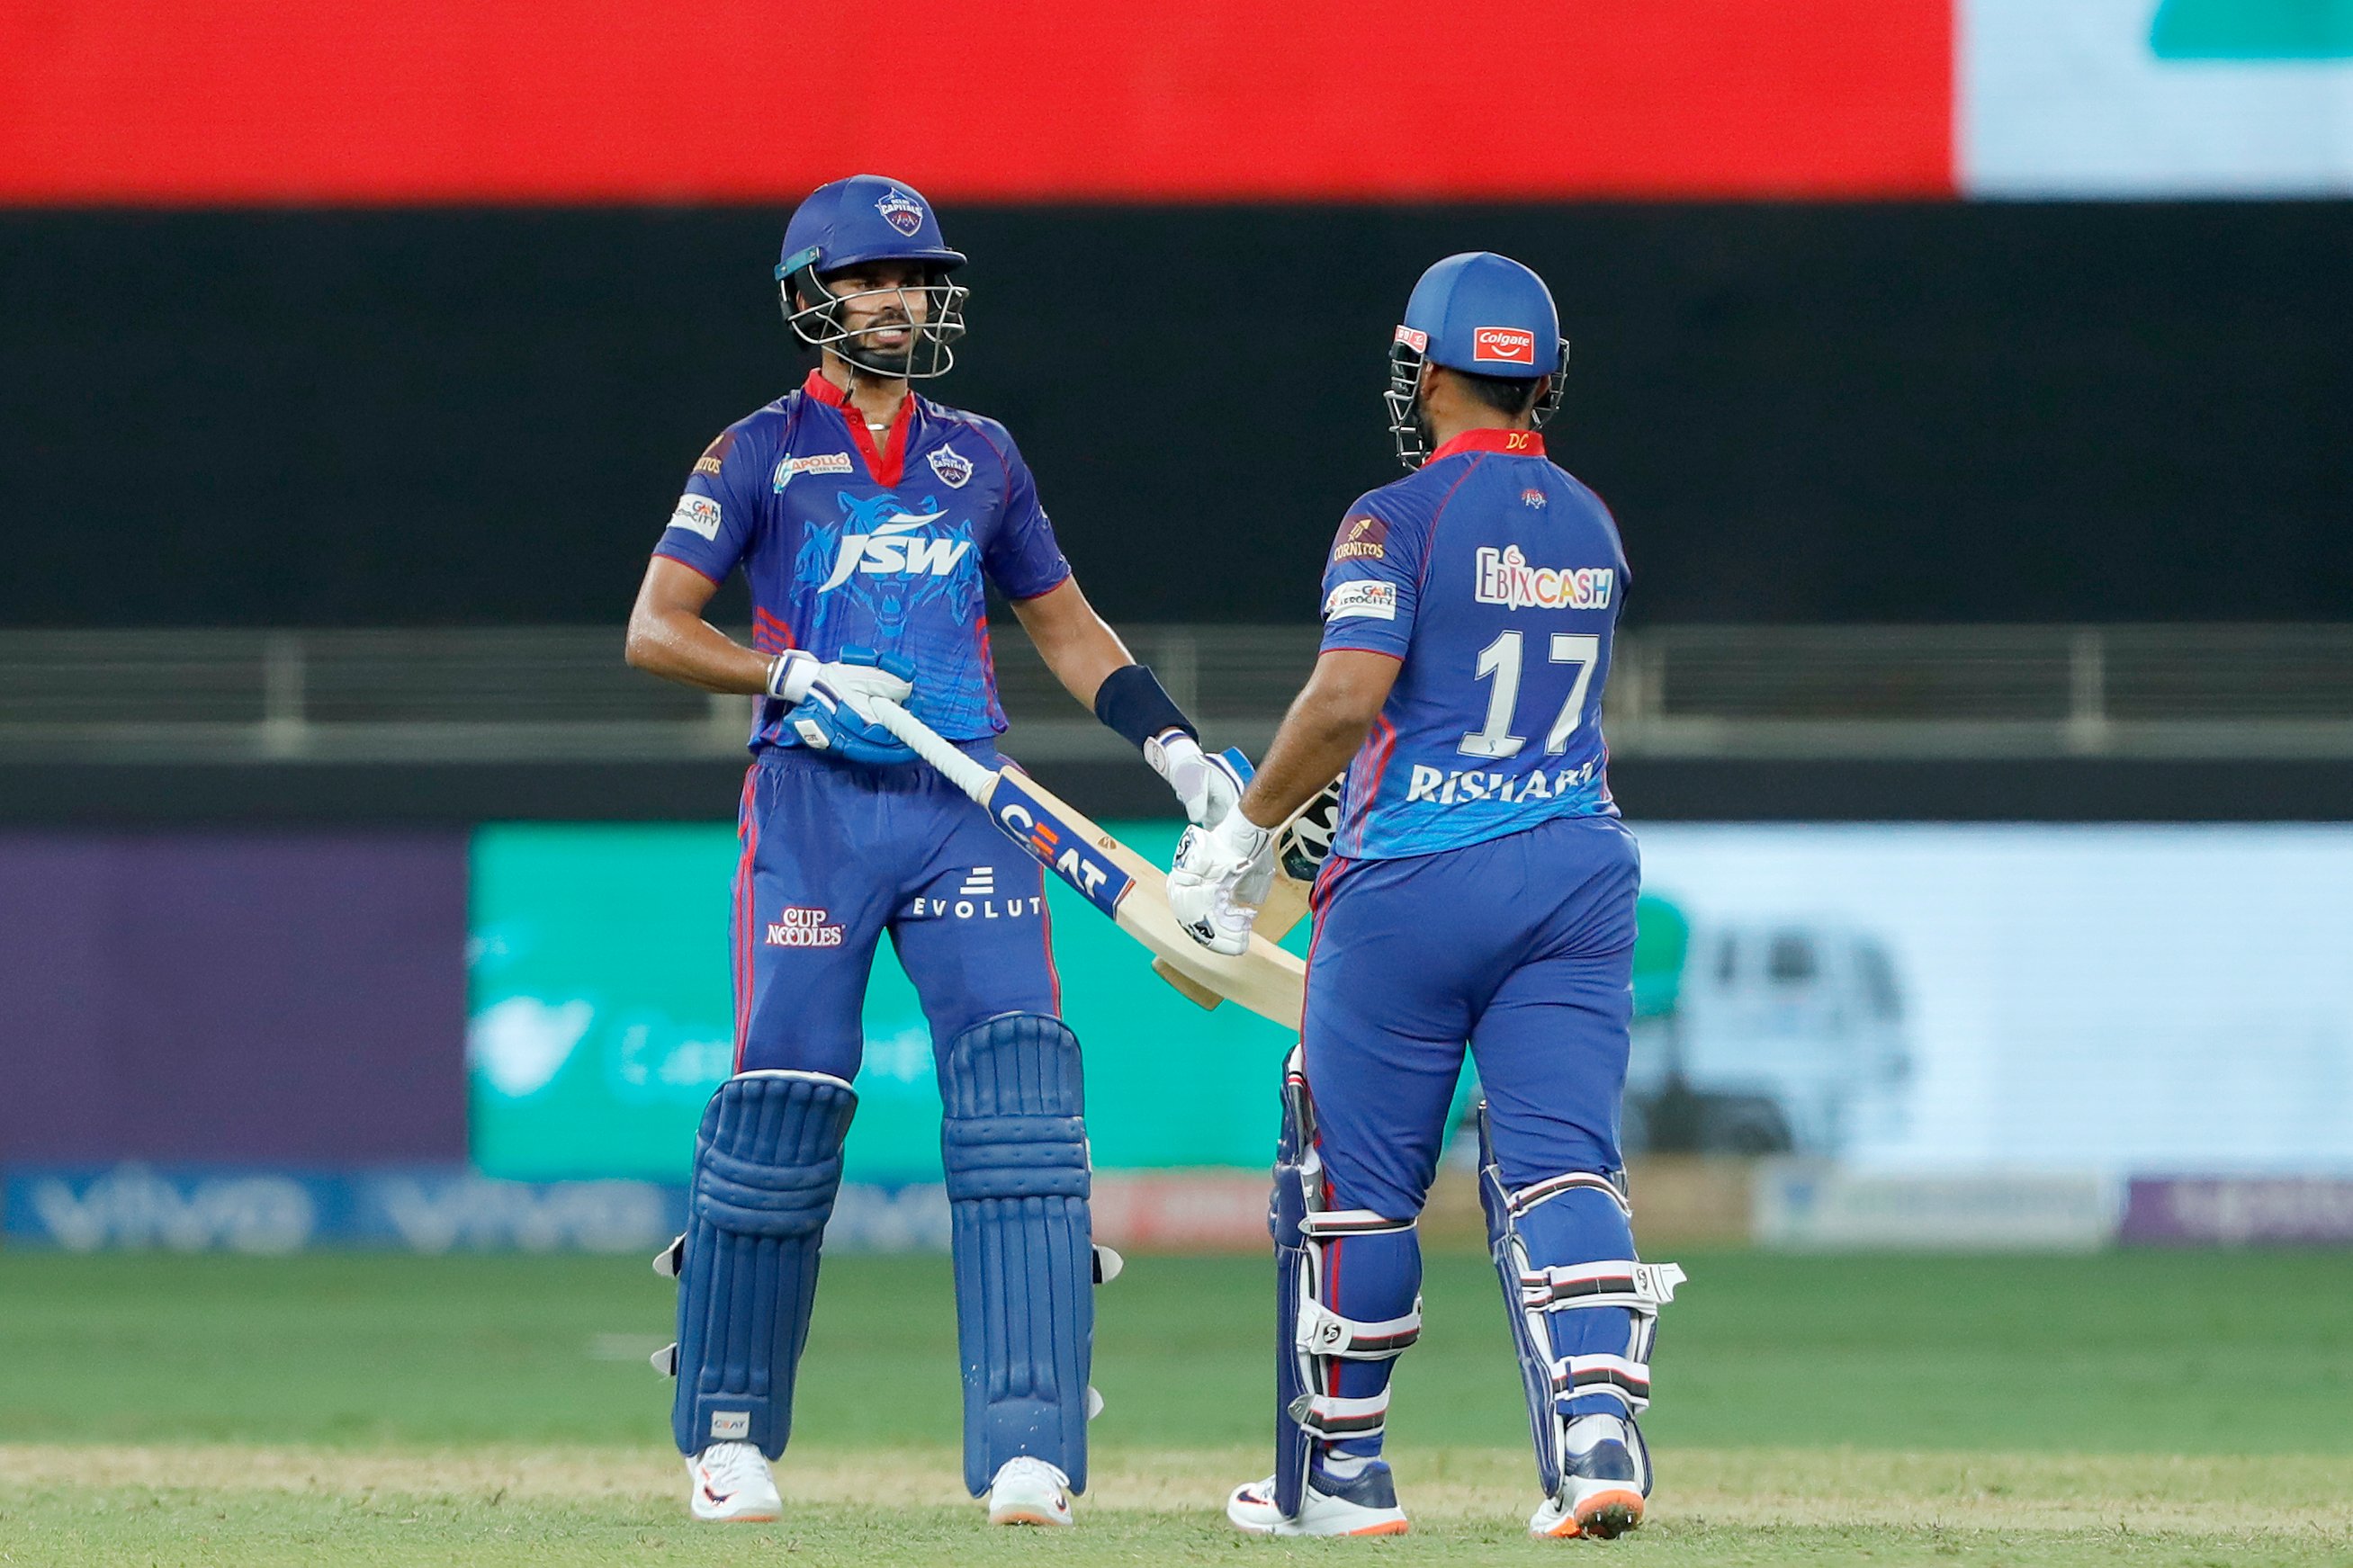 IPL 2021: Rishabh Pant’s bat slips from his hand and flies away